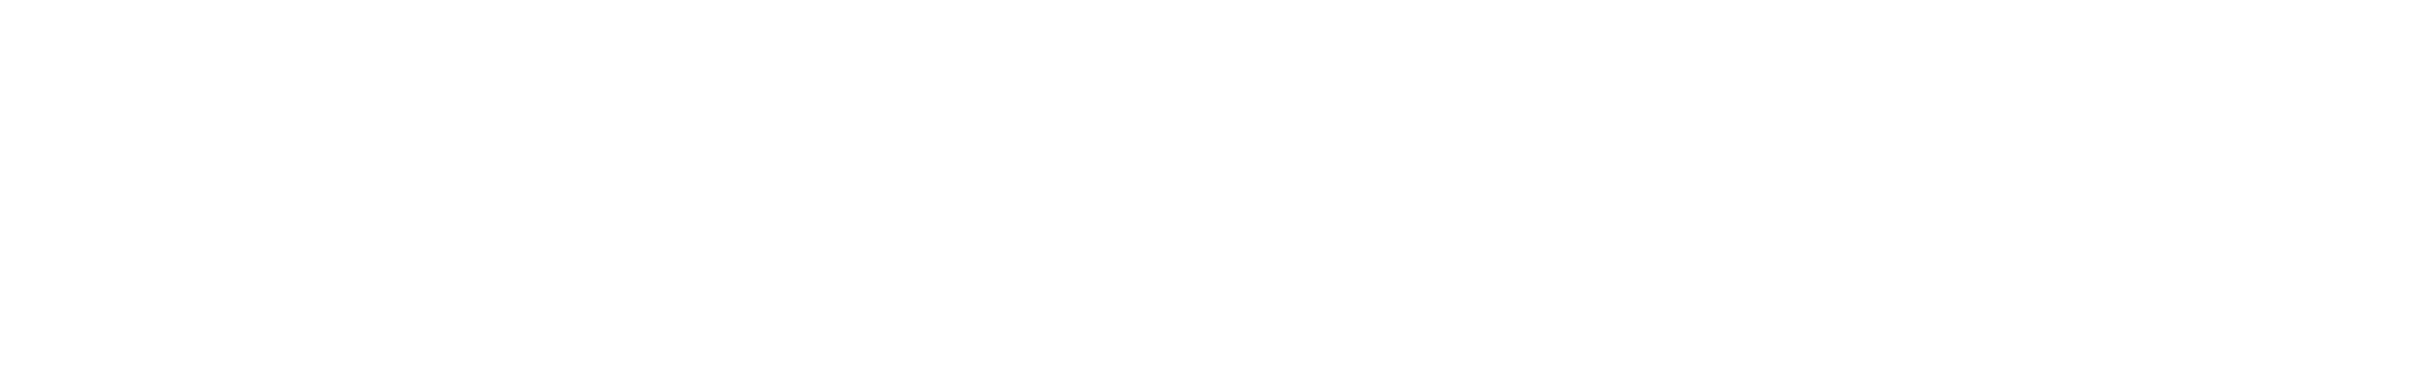 Genycell Biotech